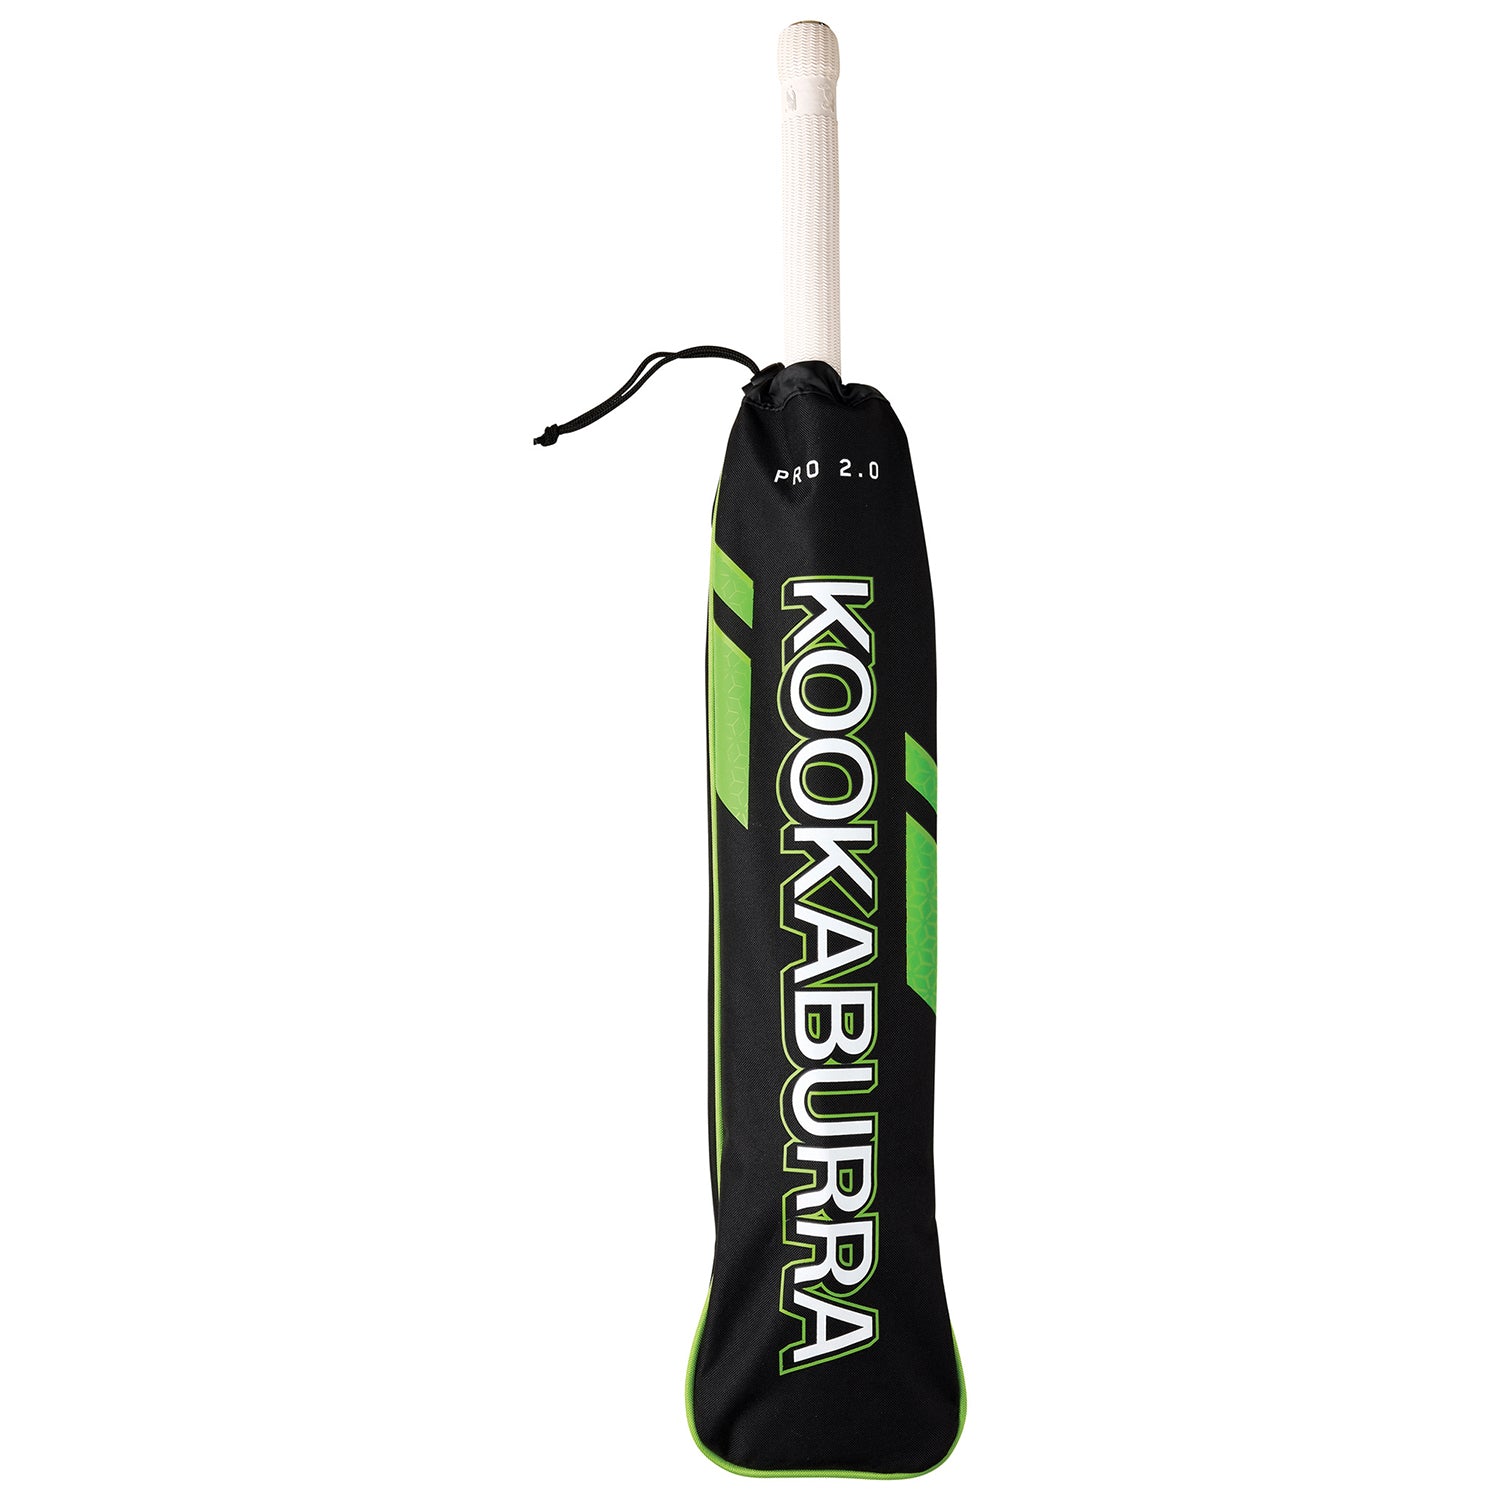 Kookaburra Pro 2.0 Cricket Bat Cover